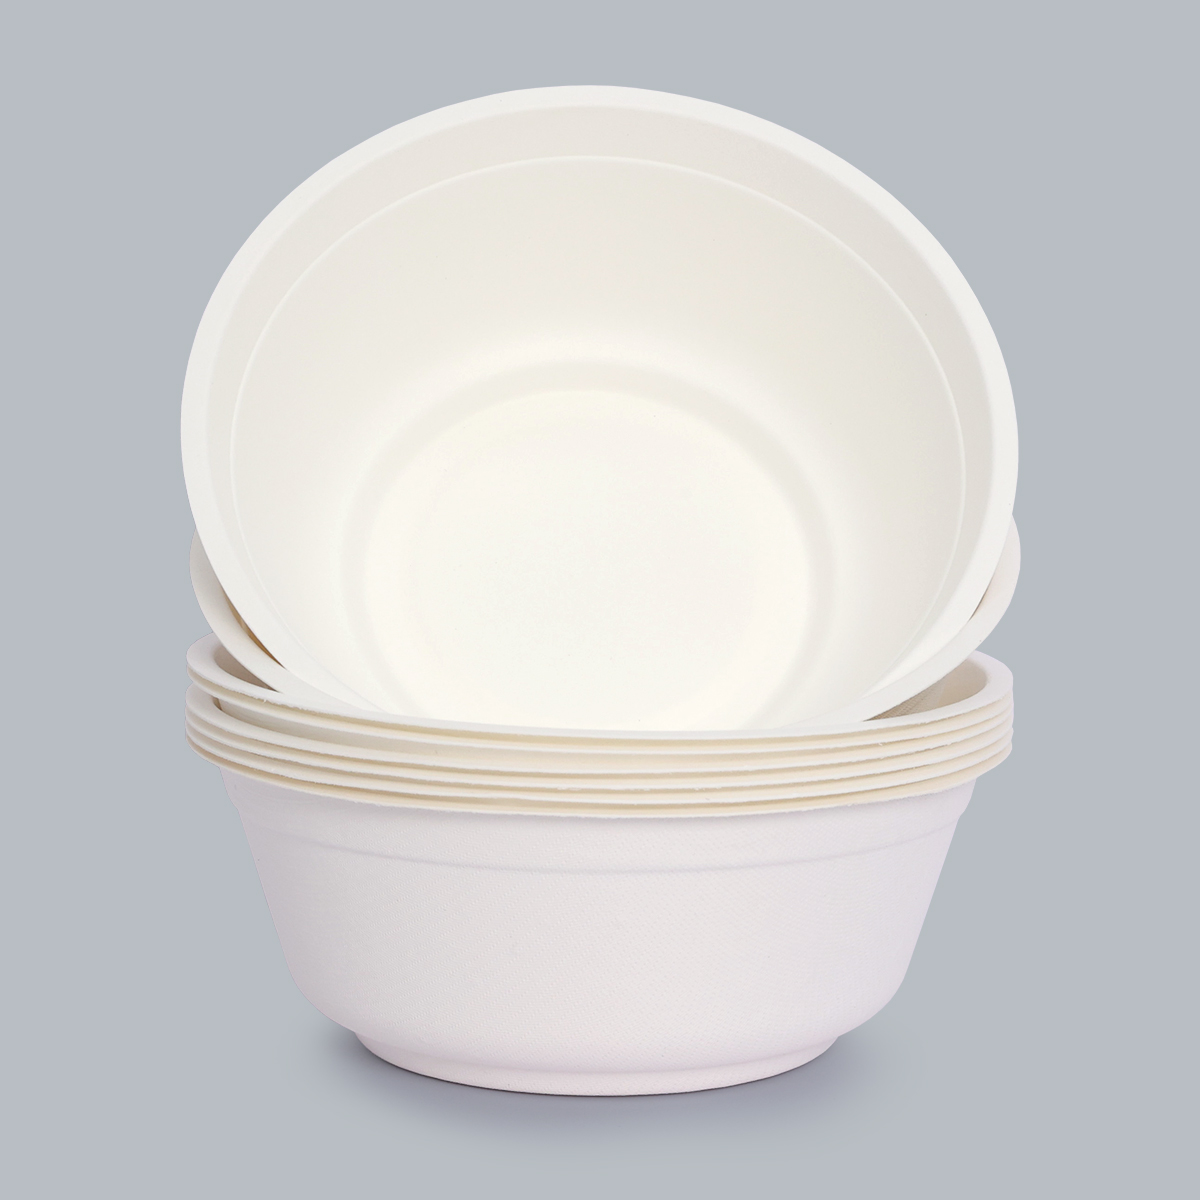 Leak-proof bowls Eco-friendly bowls Biodegradable bowls